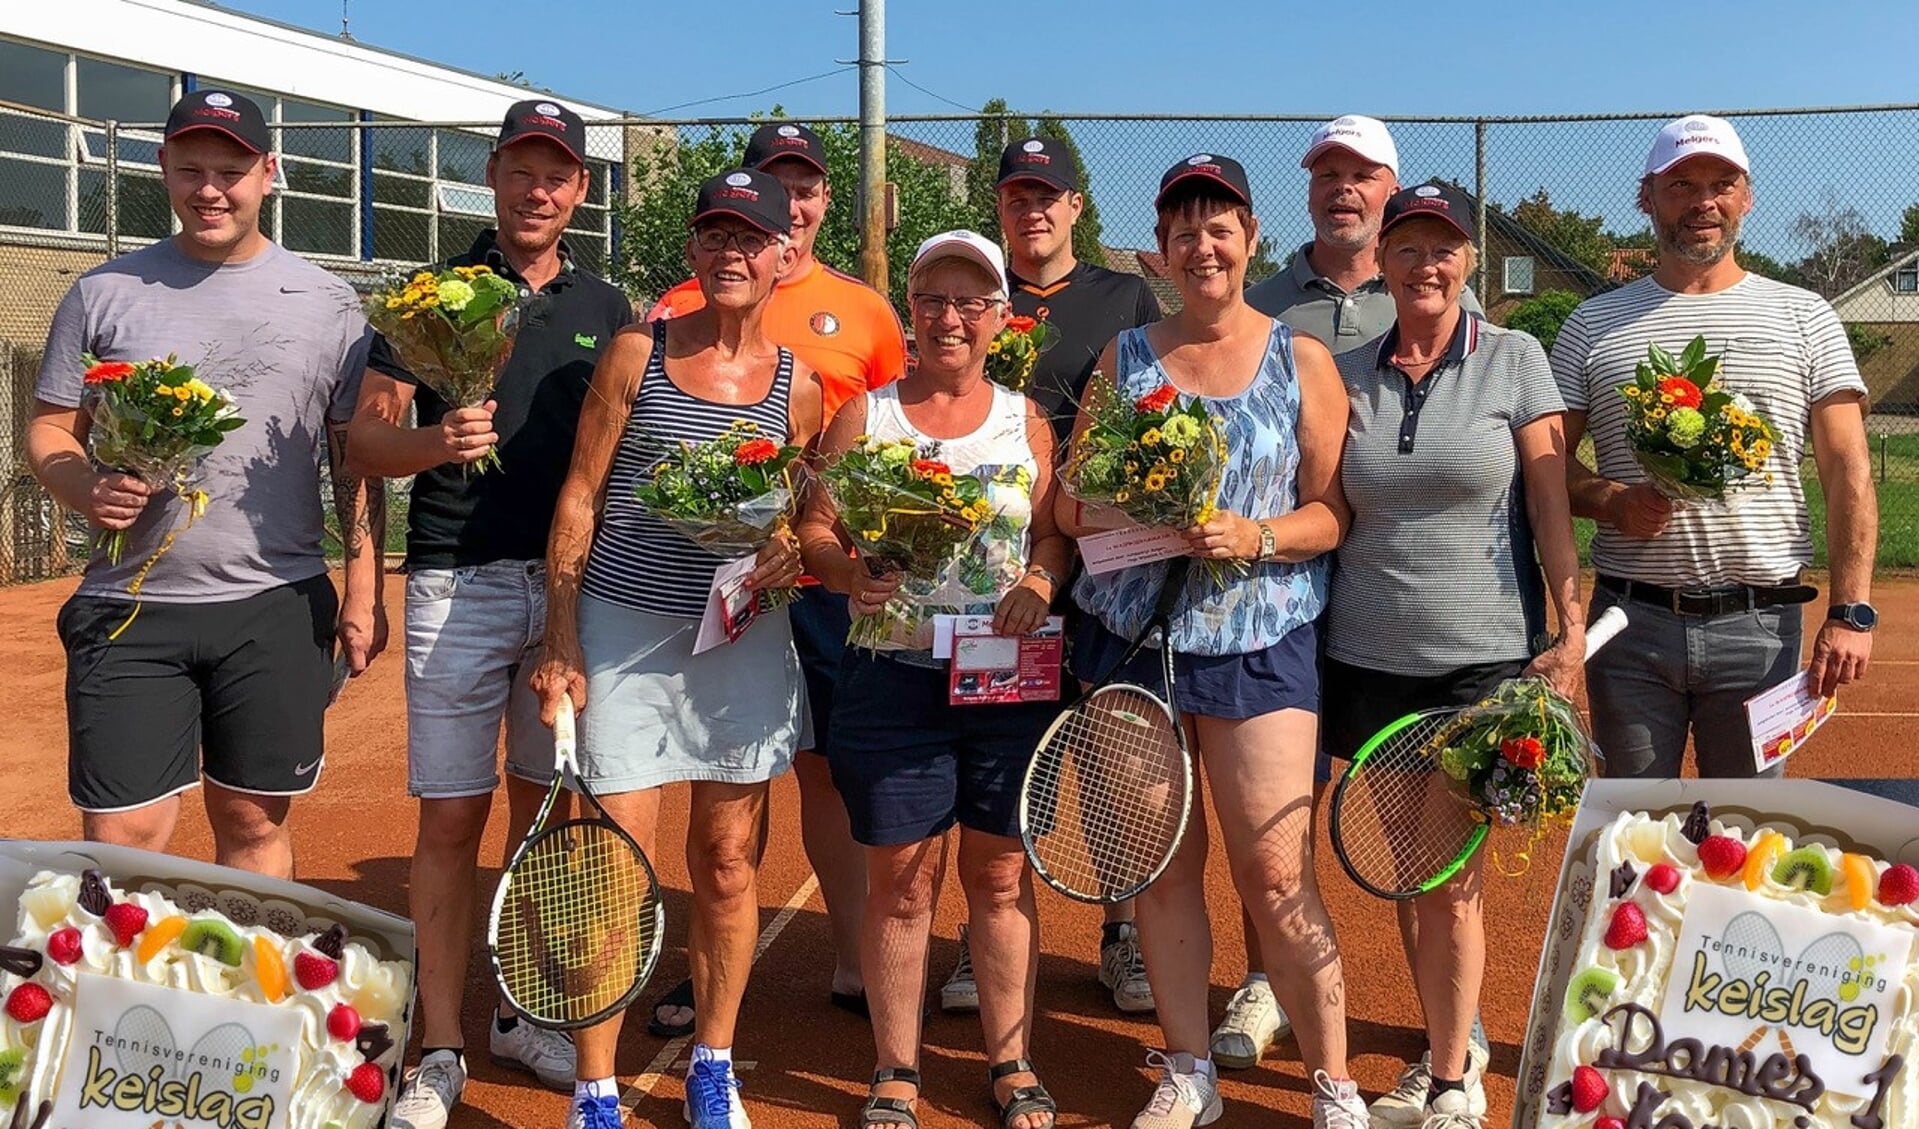 Dames 1 en Heren 1 van Tennisvereniging Keislag in Keijenborg behalen het kampioenschap. Foto: PR